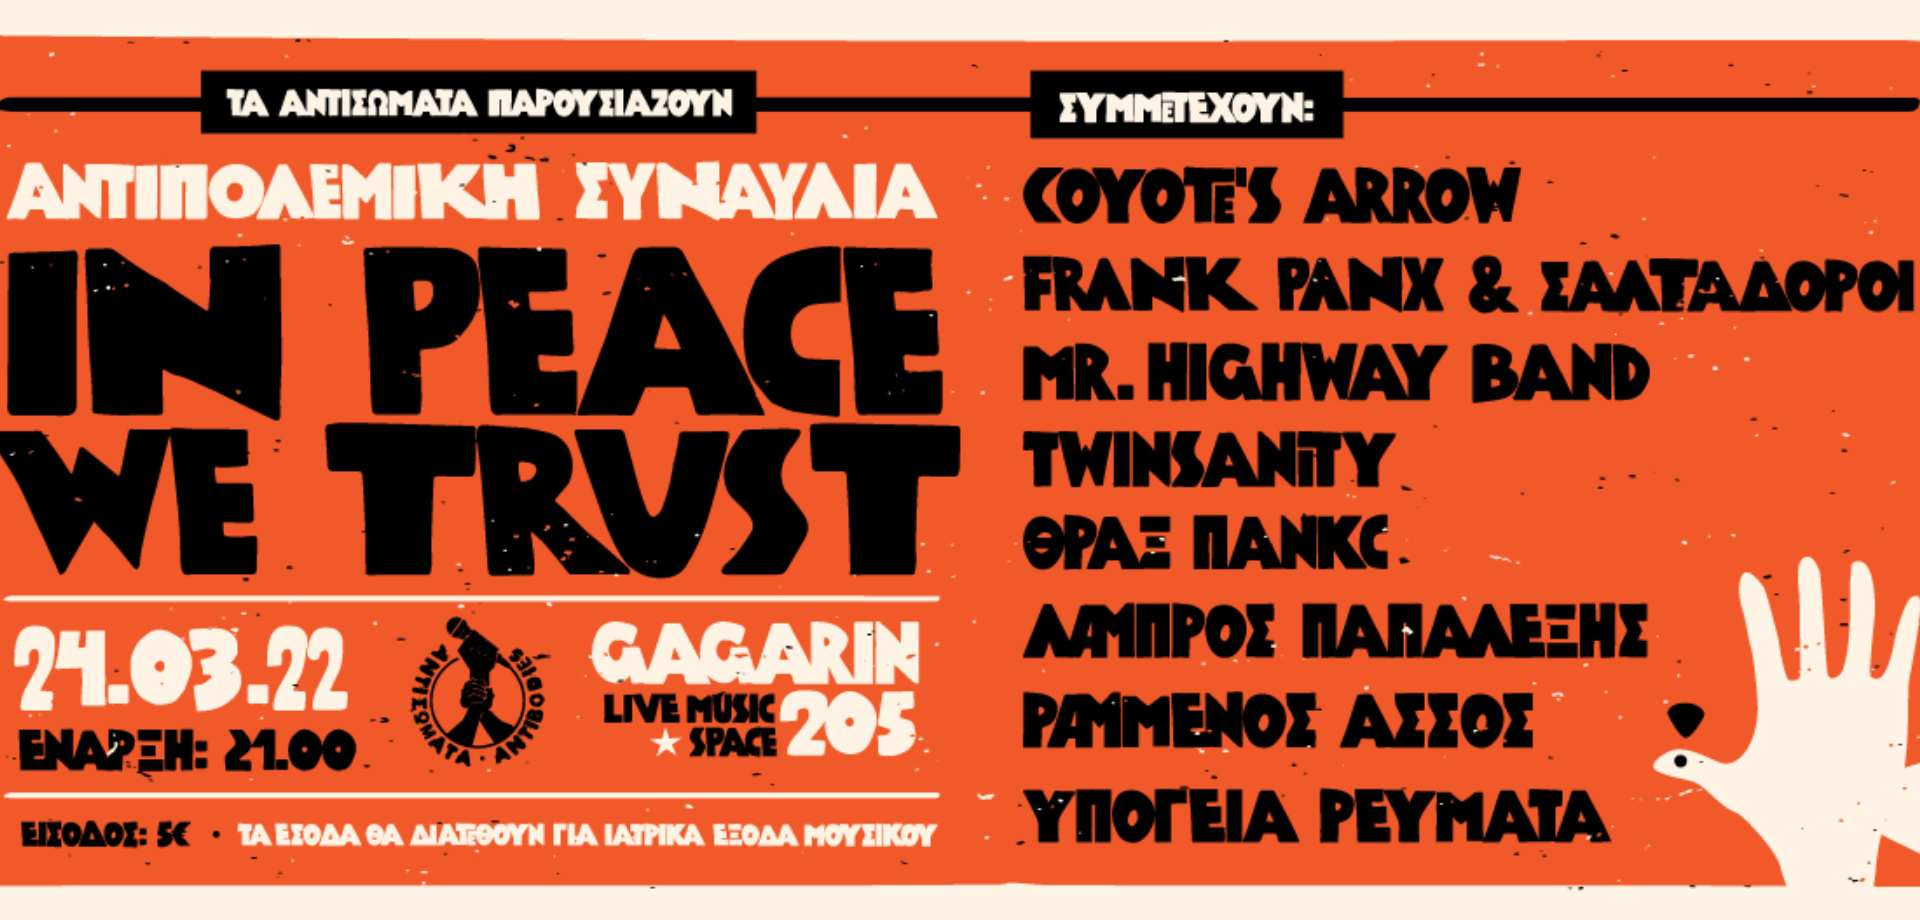 «In Peace We Trust»: Αντιπολεμική συναυλία από τα Αντισώματα στο Gagarin 205